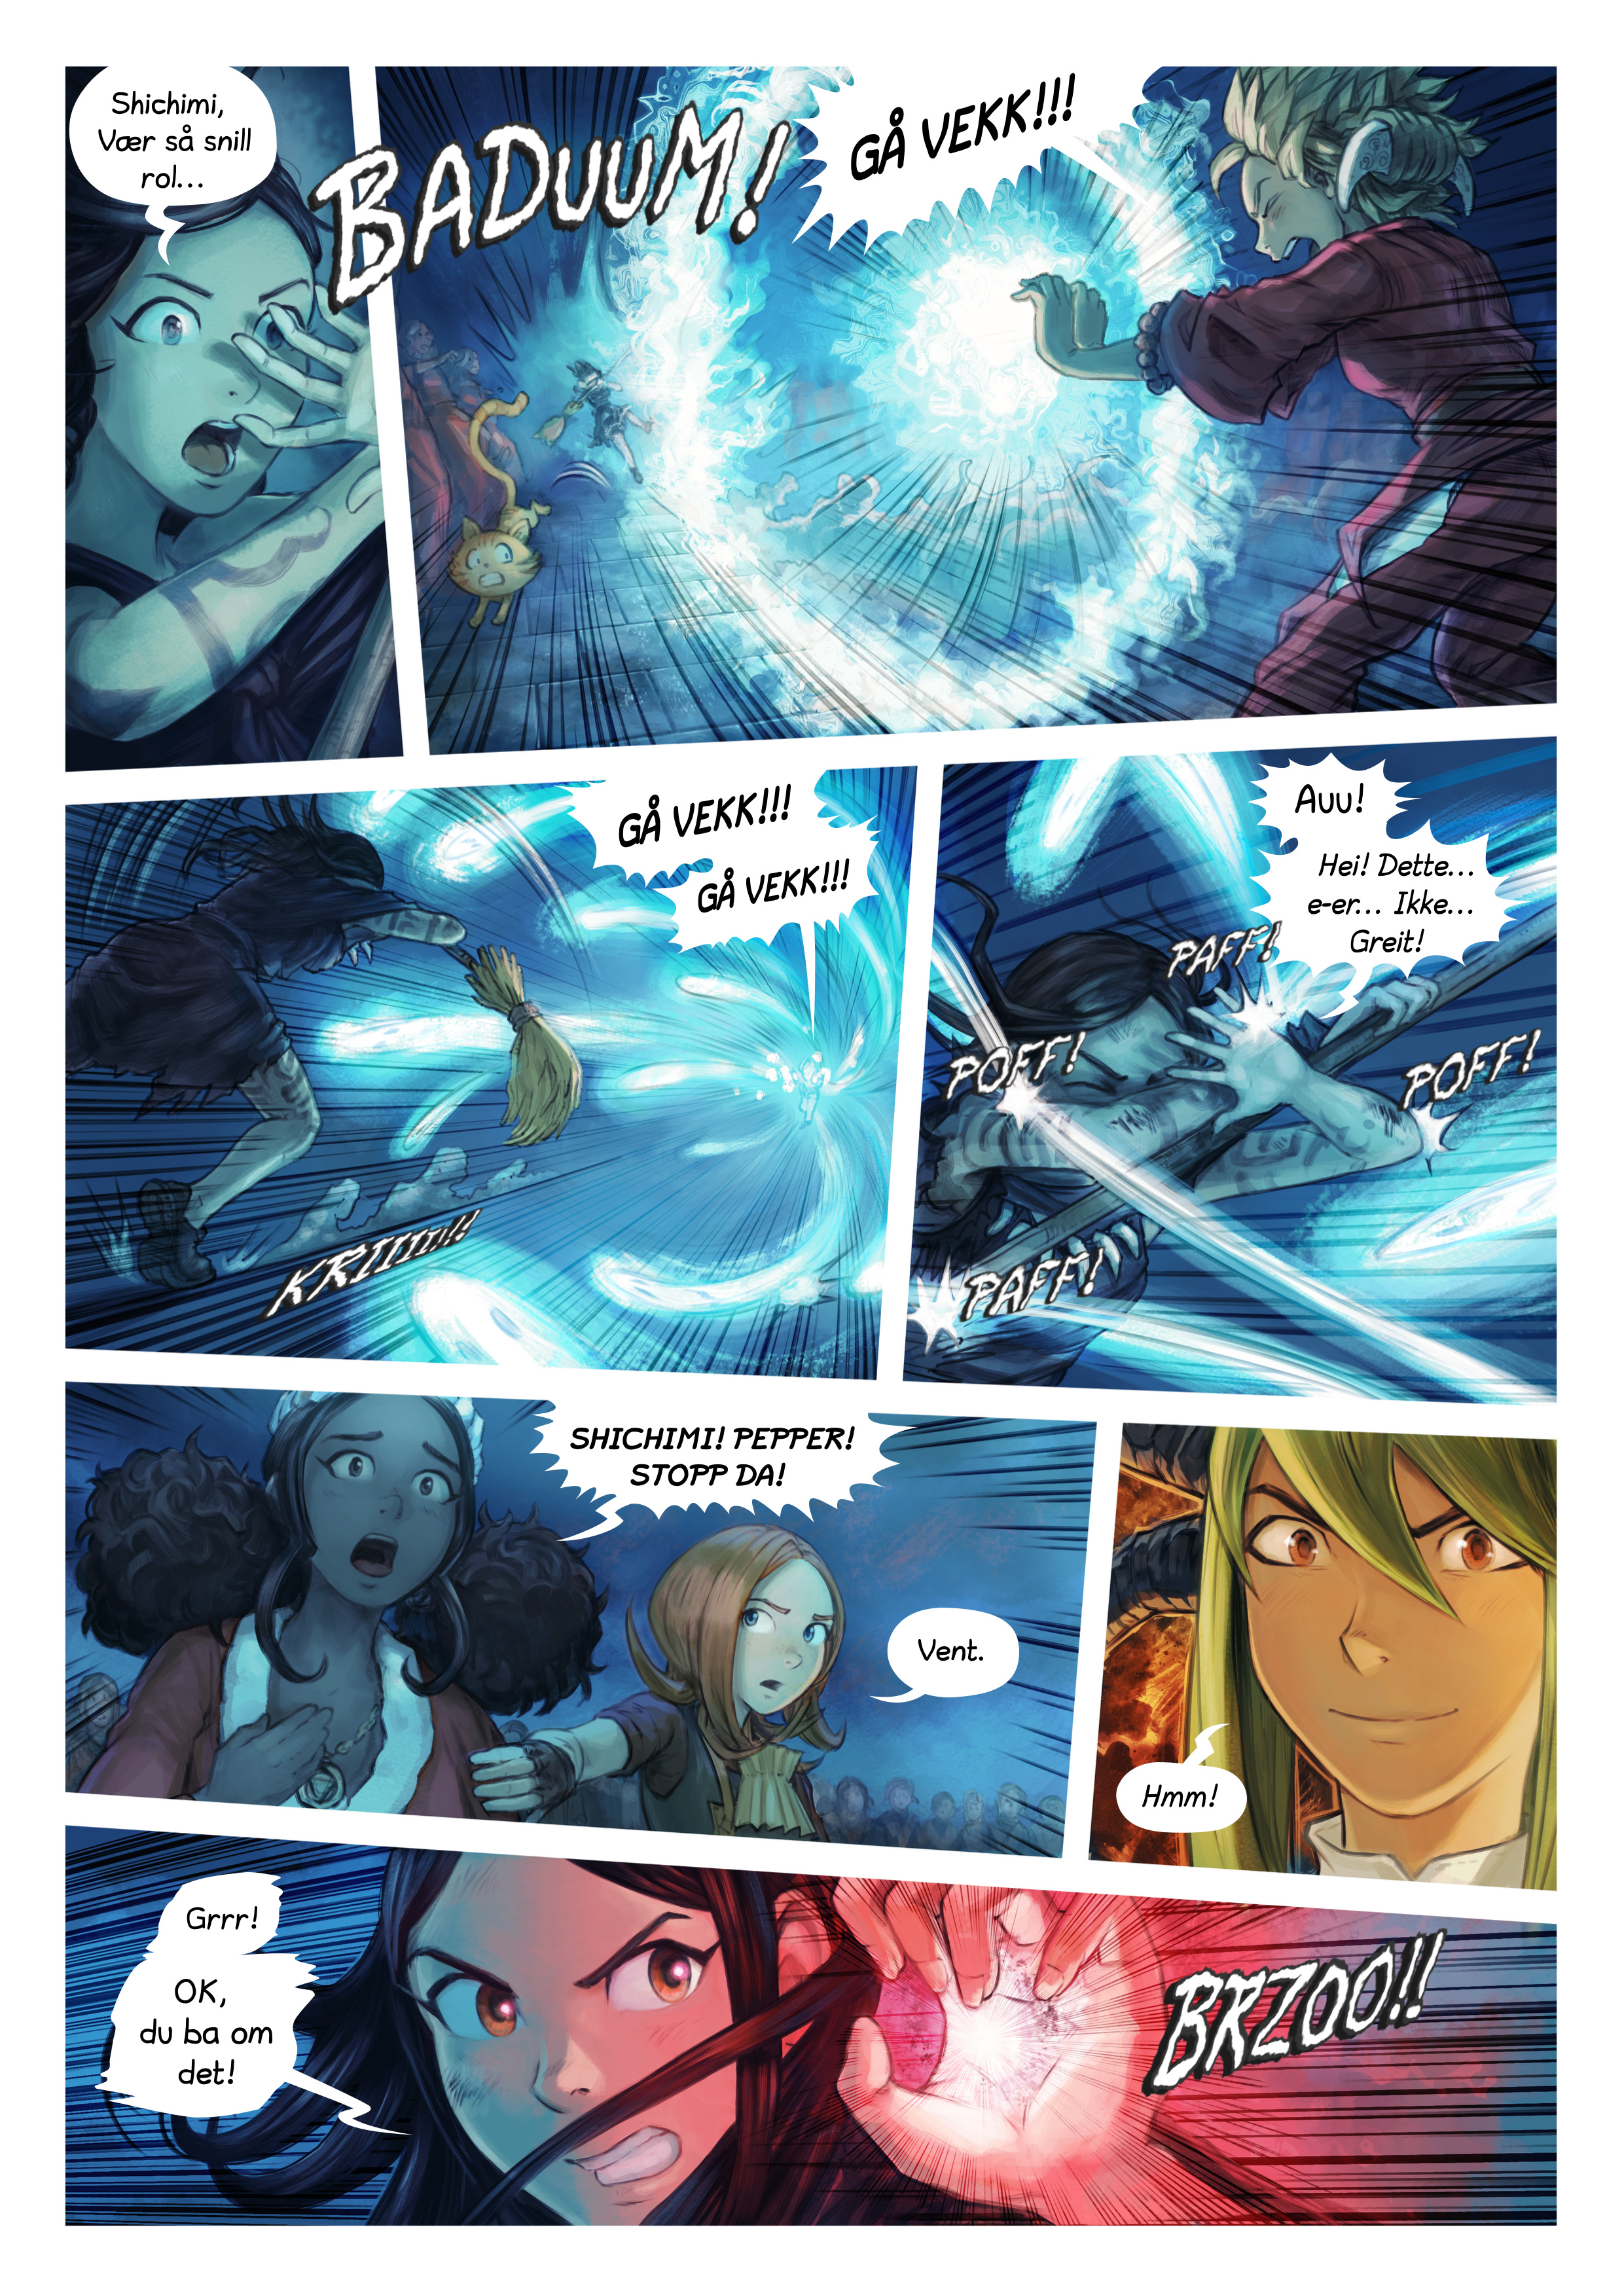 Episode 34: Shichimi slås til ridder, Page 6